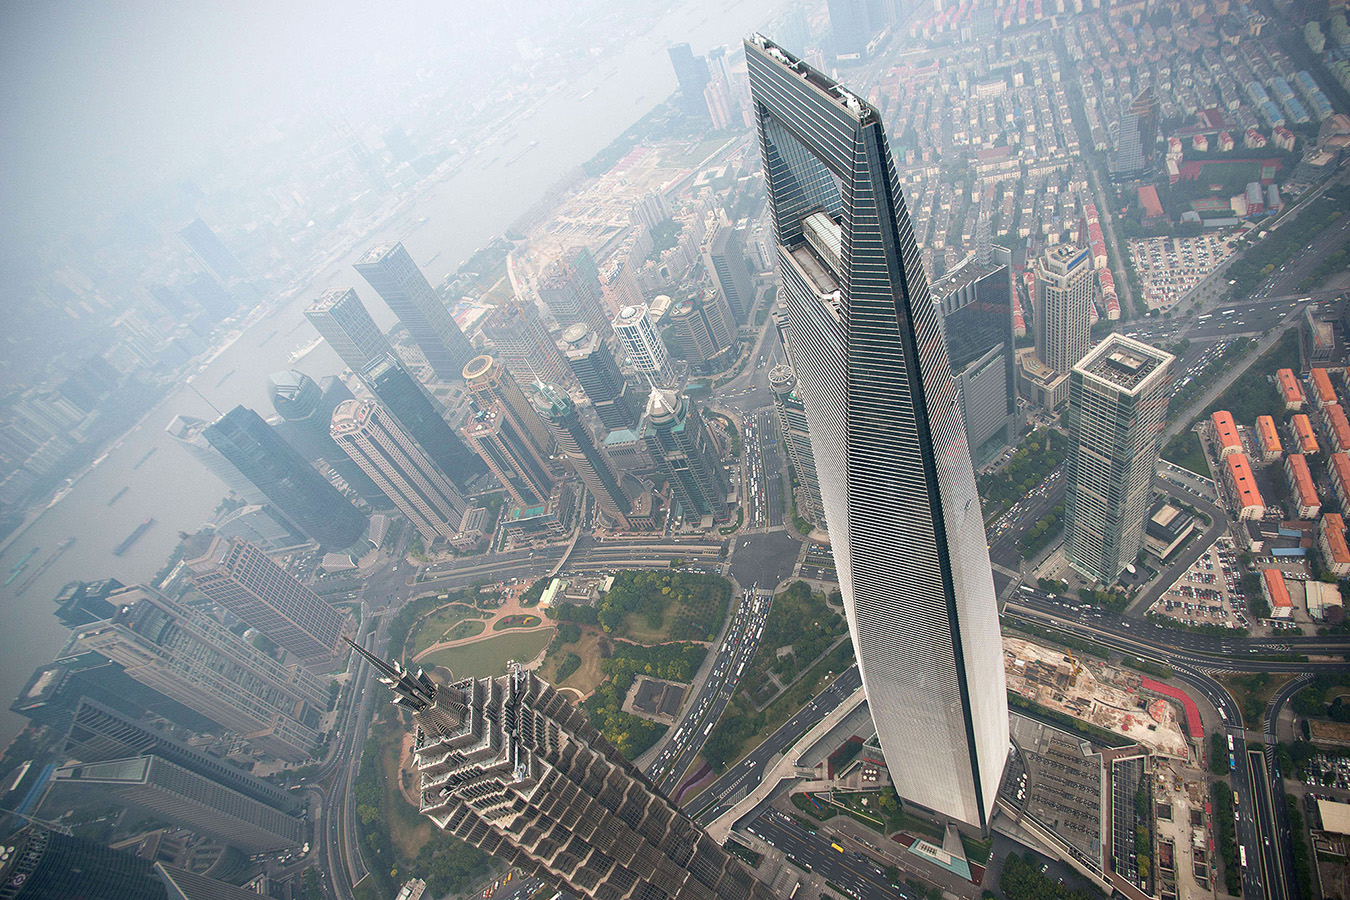 Shanghai World Financial Center, Kohn Pedersen Fox & Associates (492m)